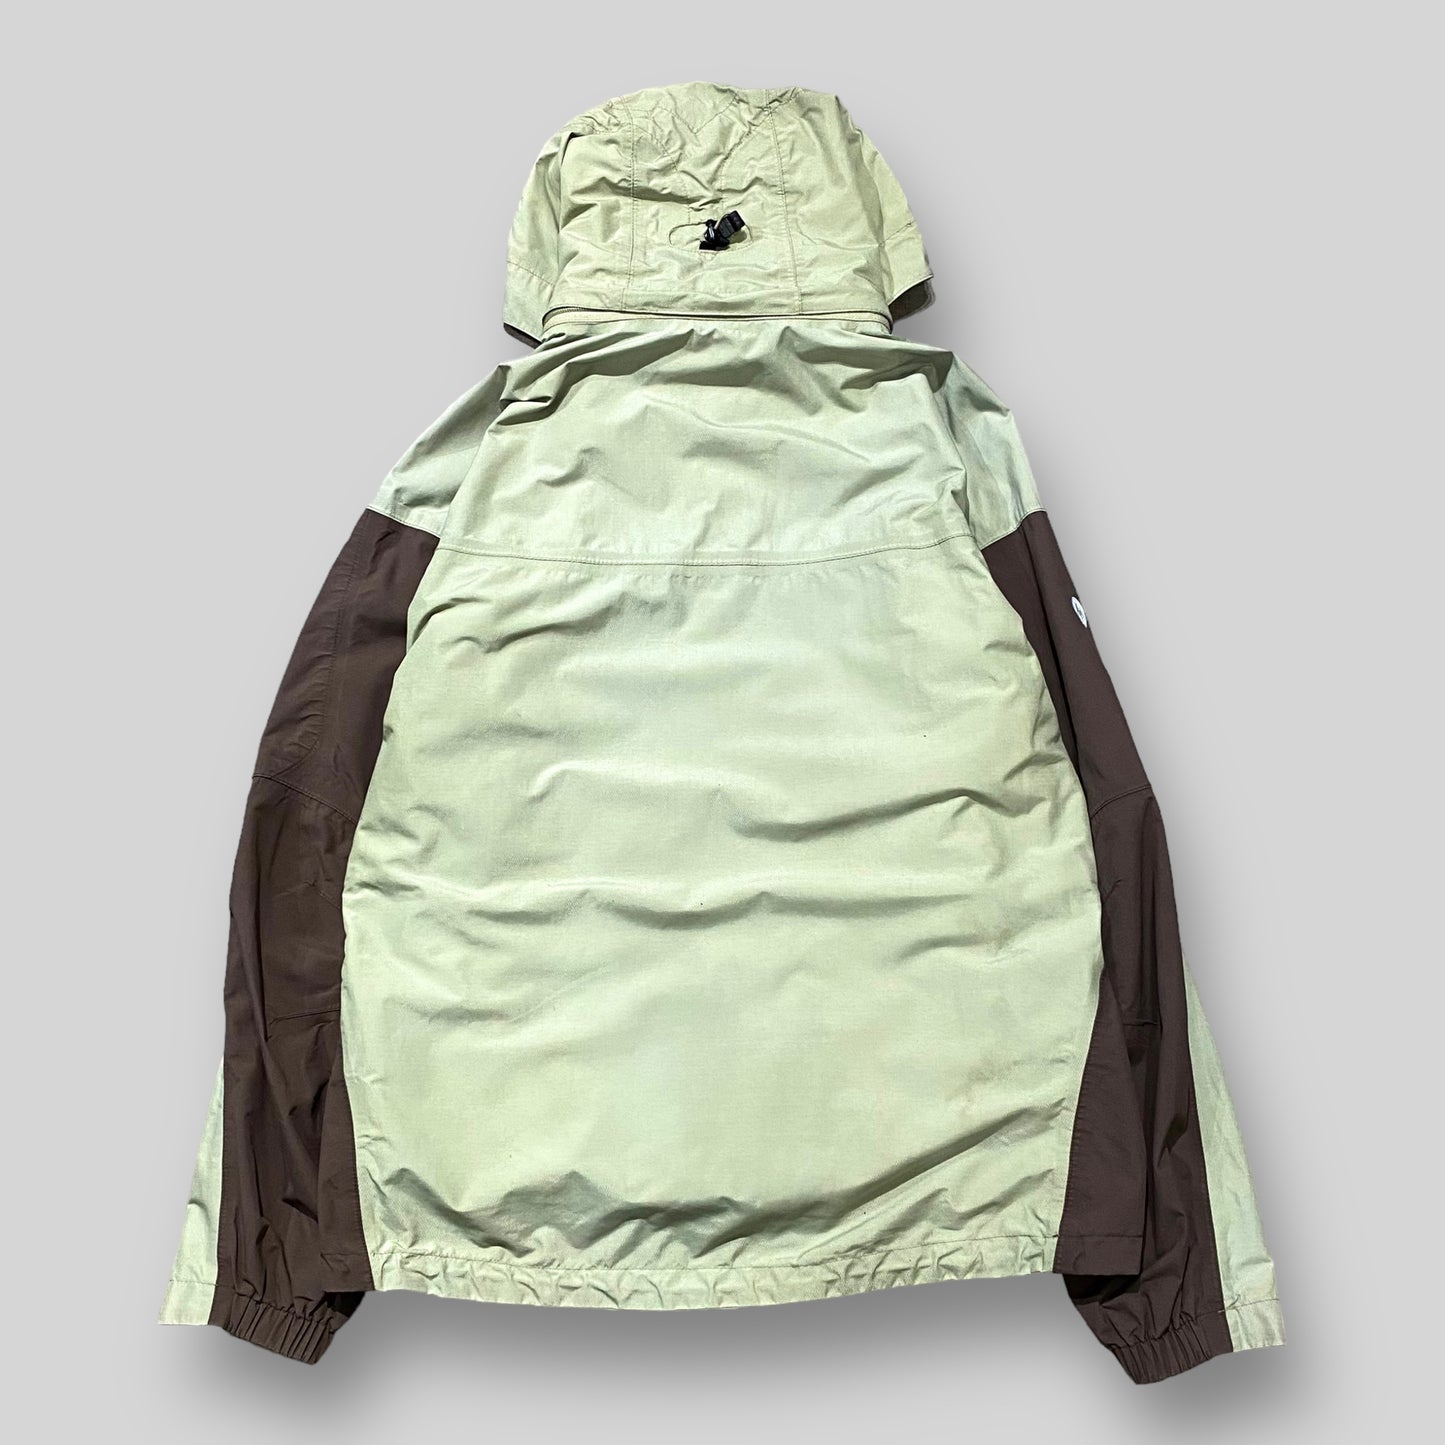 "Marmot" Mountain shell jacket